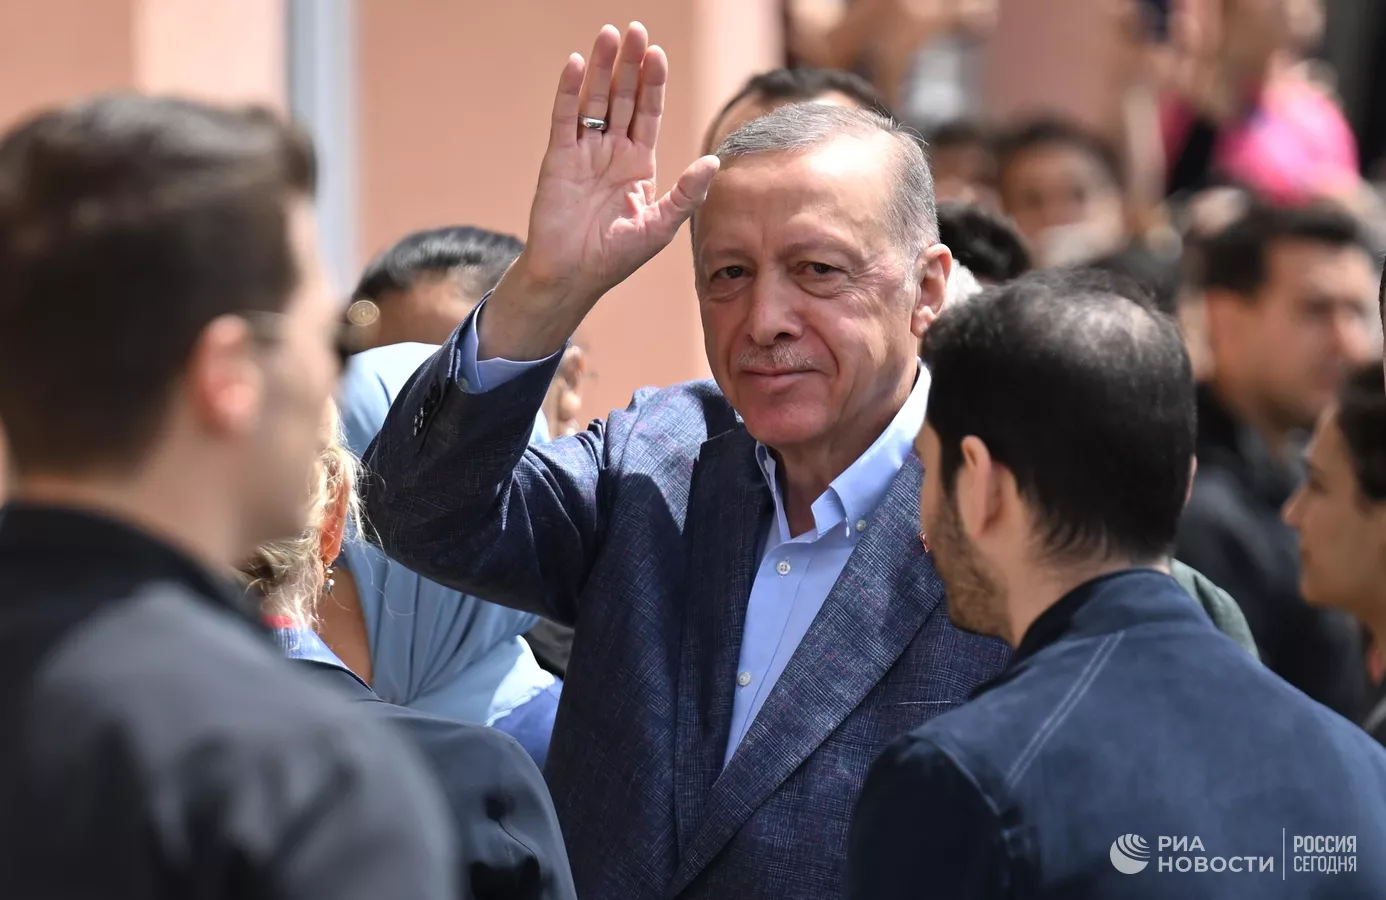 Թուրքիայի նախագահական ընտրությունների 2-րդ փուլում հաղթելու է Էրդողանը․ հարցում